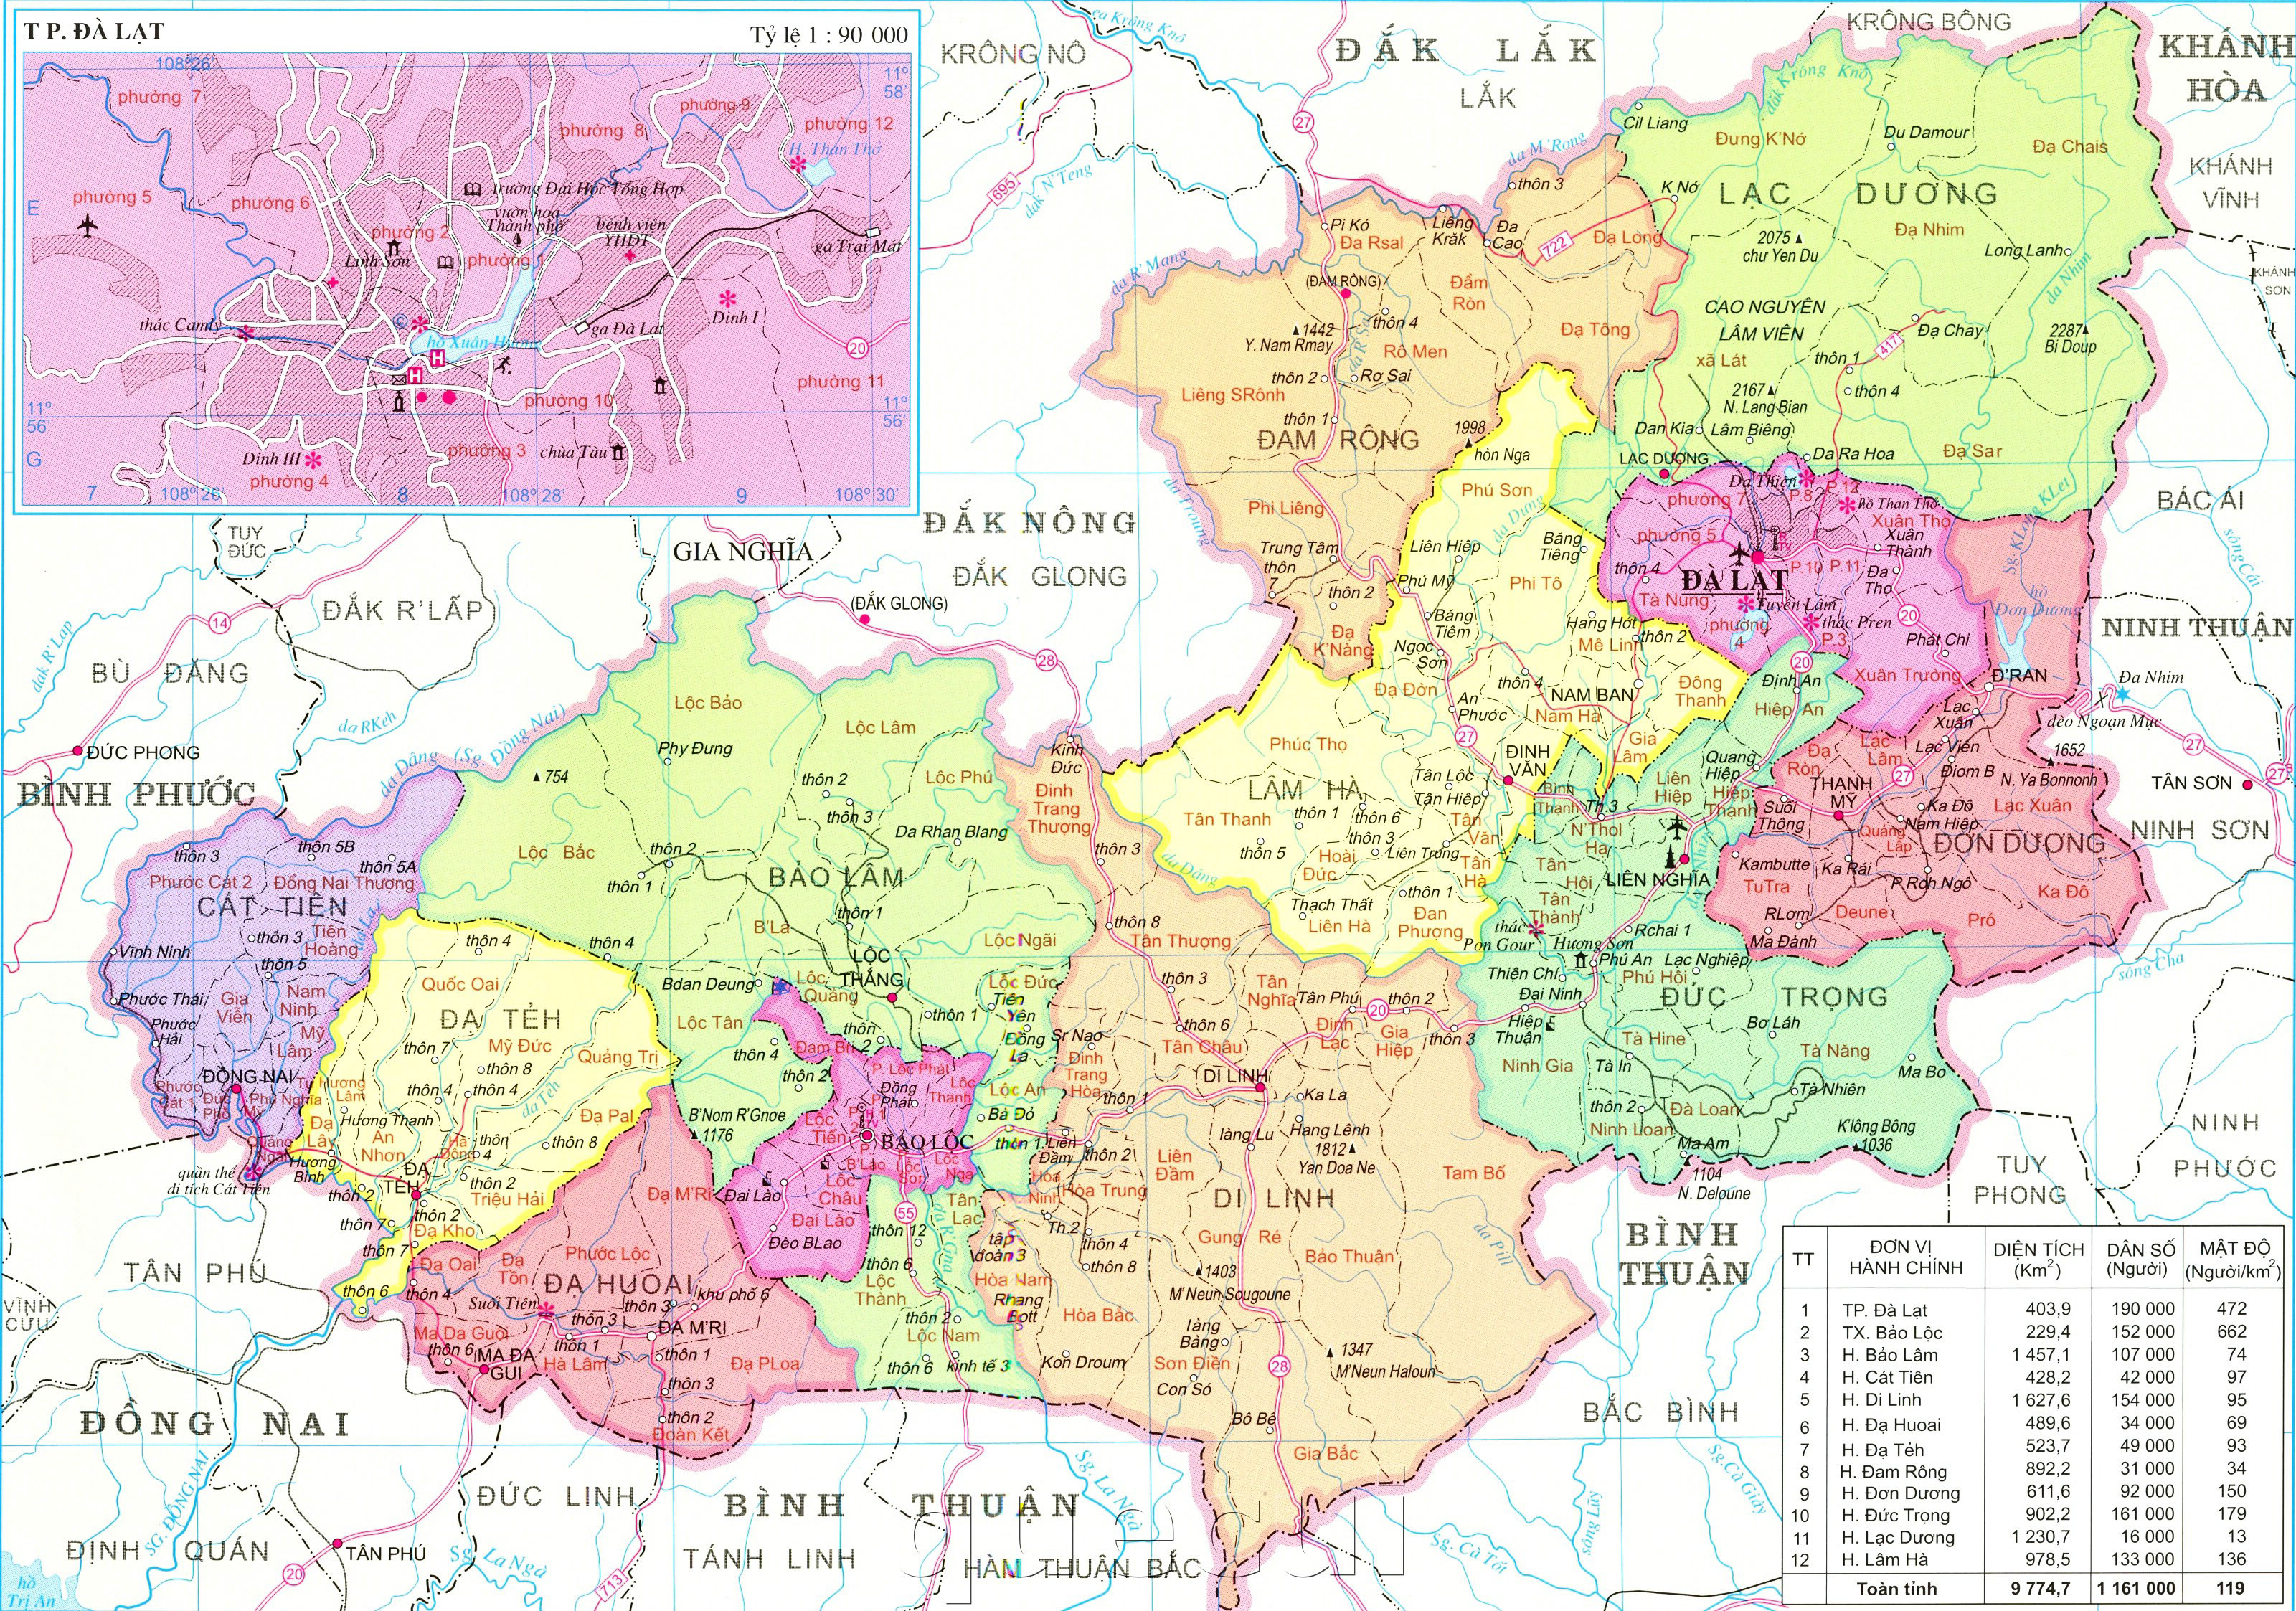 Tải về bản đồ Lâm Đồng mới nhất năm 2024 để trải nghiệm một công nghệ tiên tiến và tốt nhất có thể. Với nhiều cập nhật về thông tin địa lý và văn hóa khu vực, bản đồ sẽ giúp bạn dễ dàng tìm được điểm đến ở Lâm Đồng.